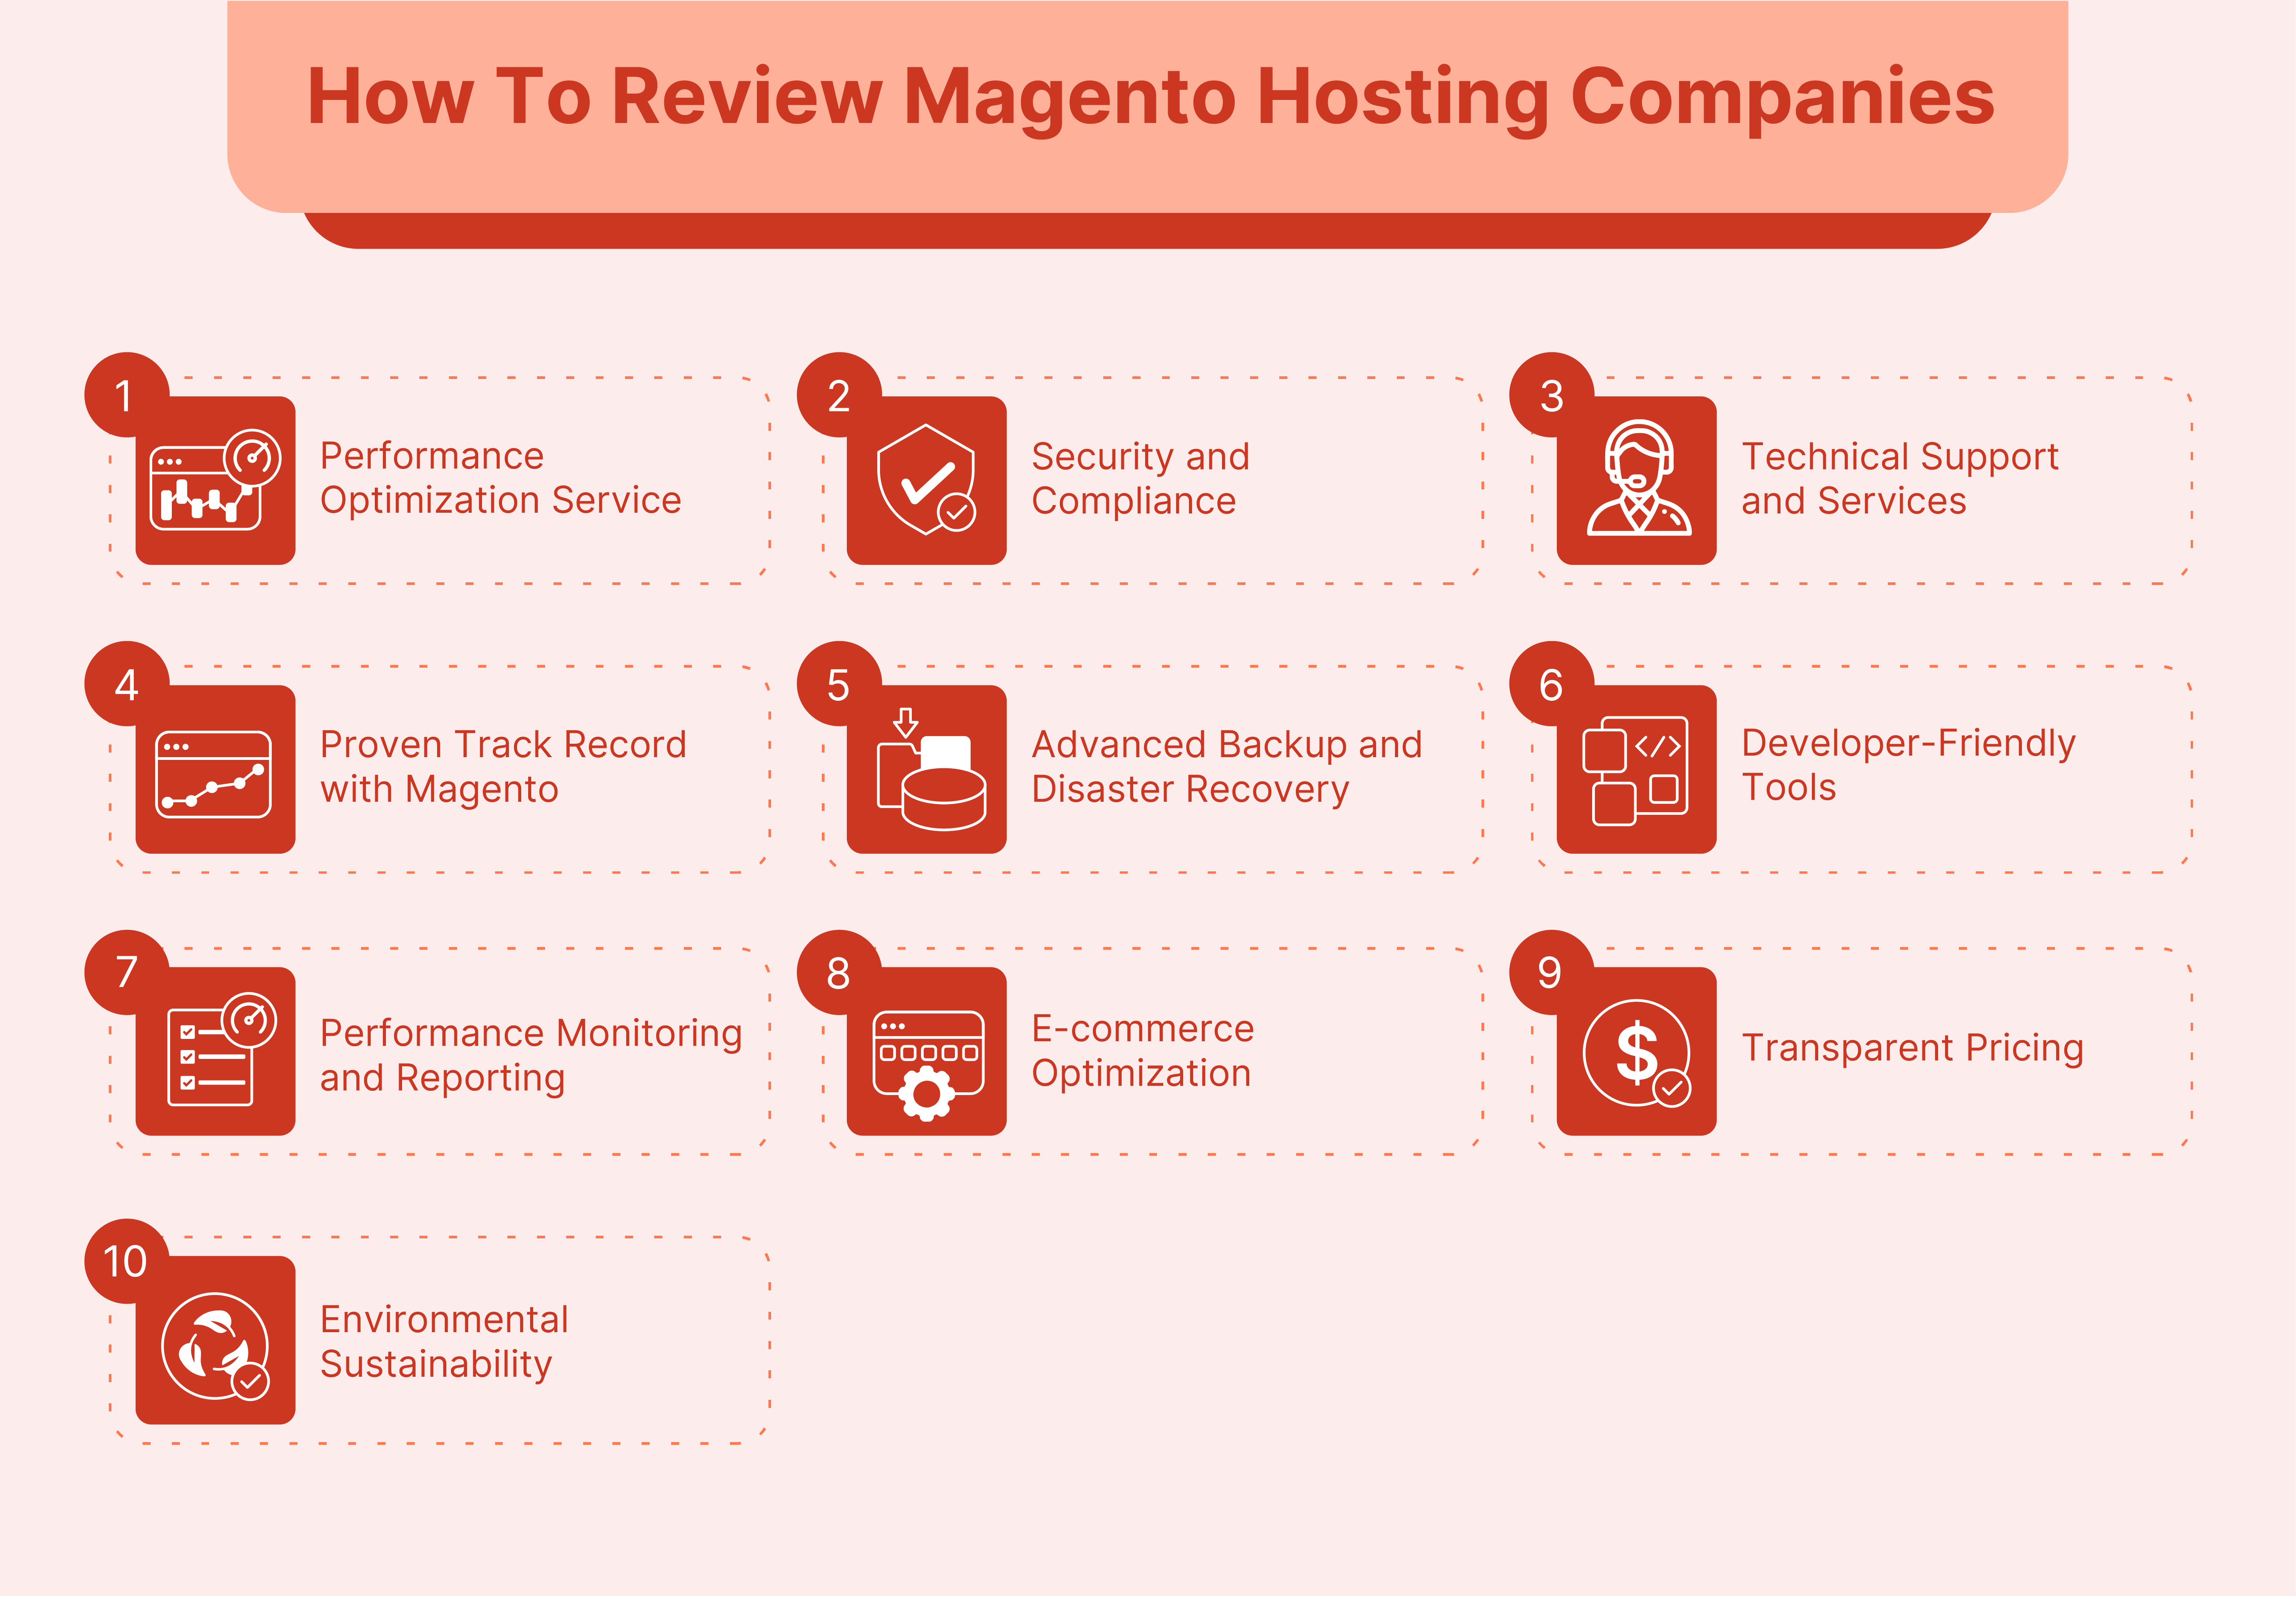 How to Review Magento Hosting Companies